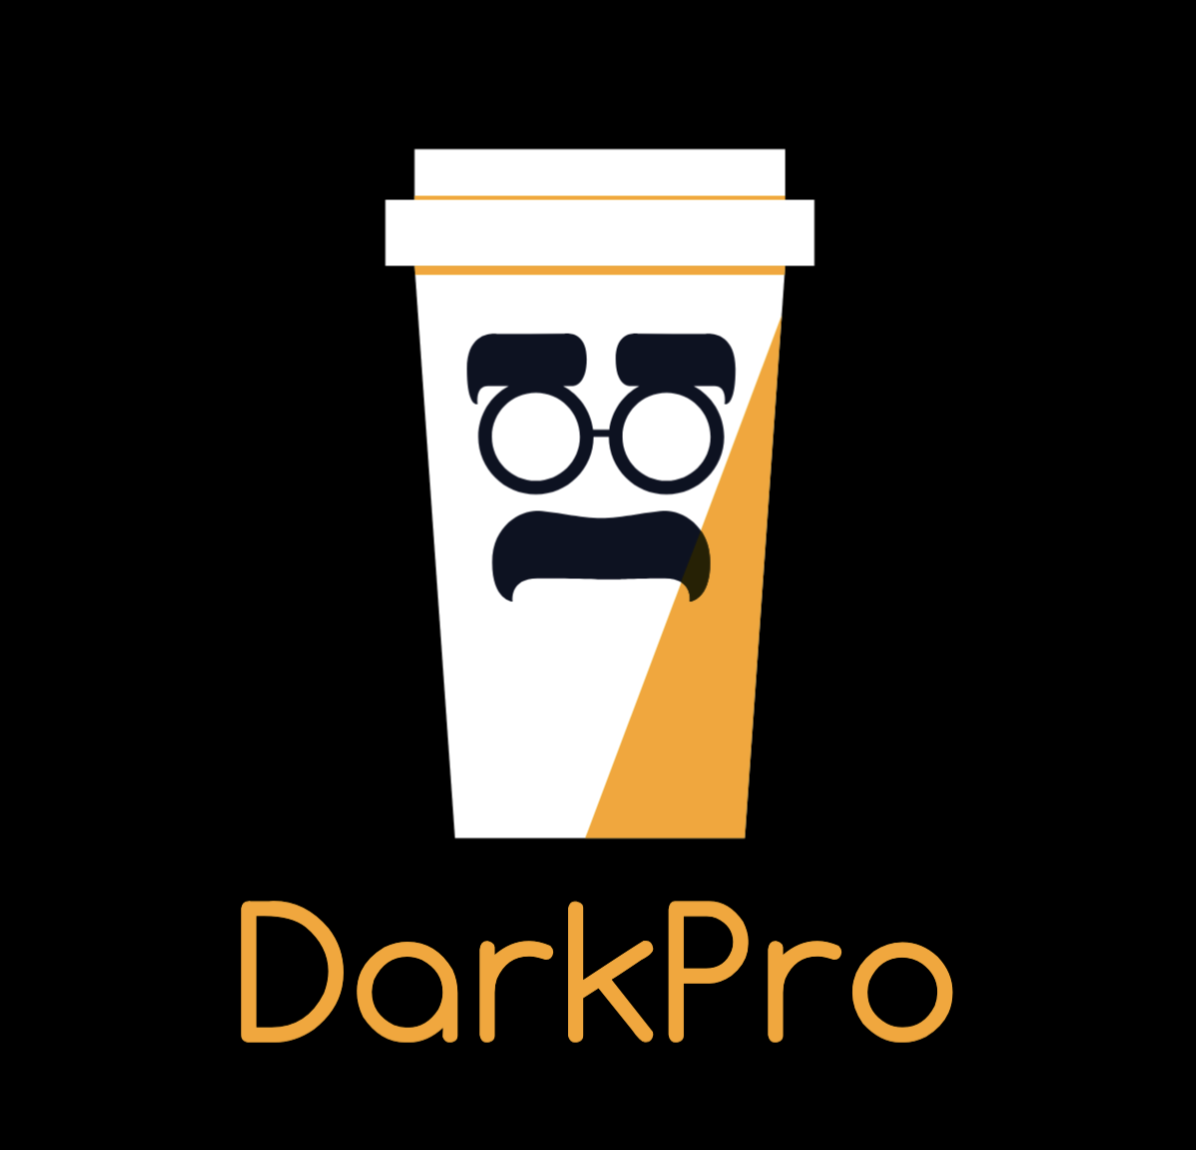 DarkPro